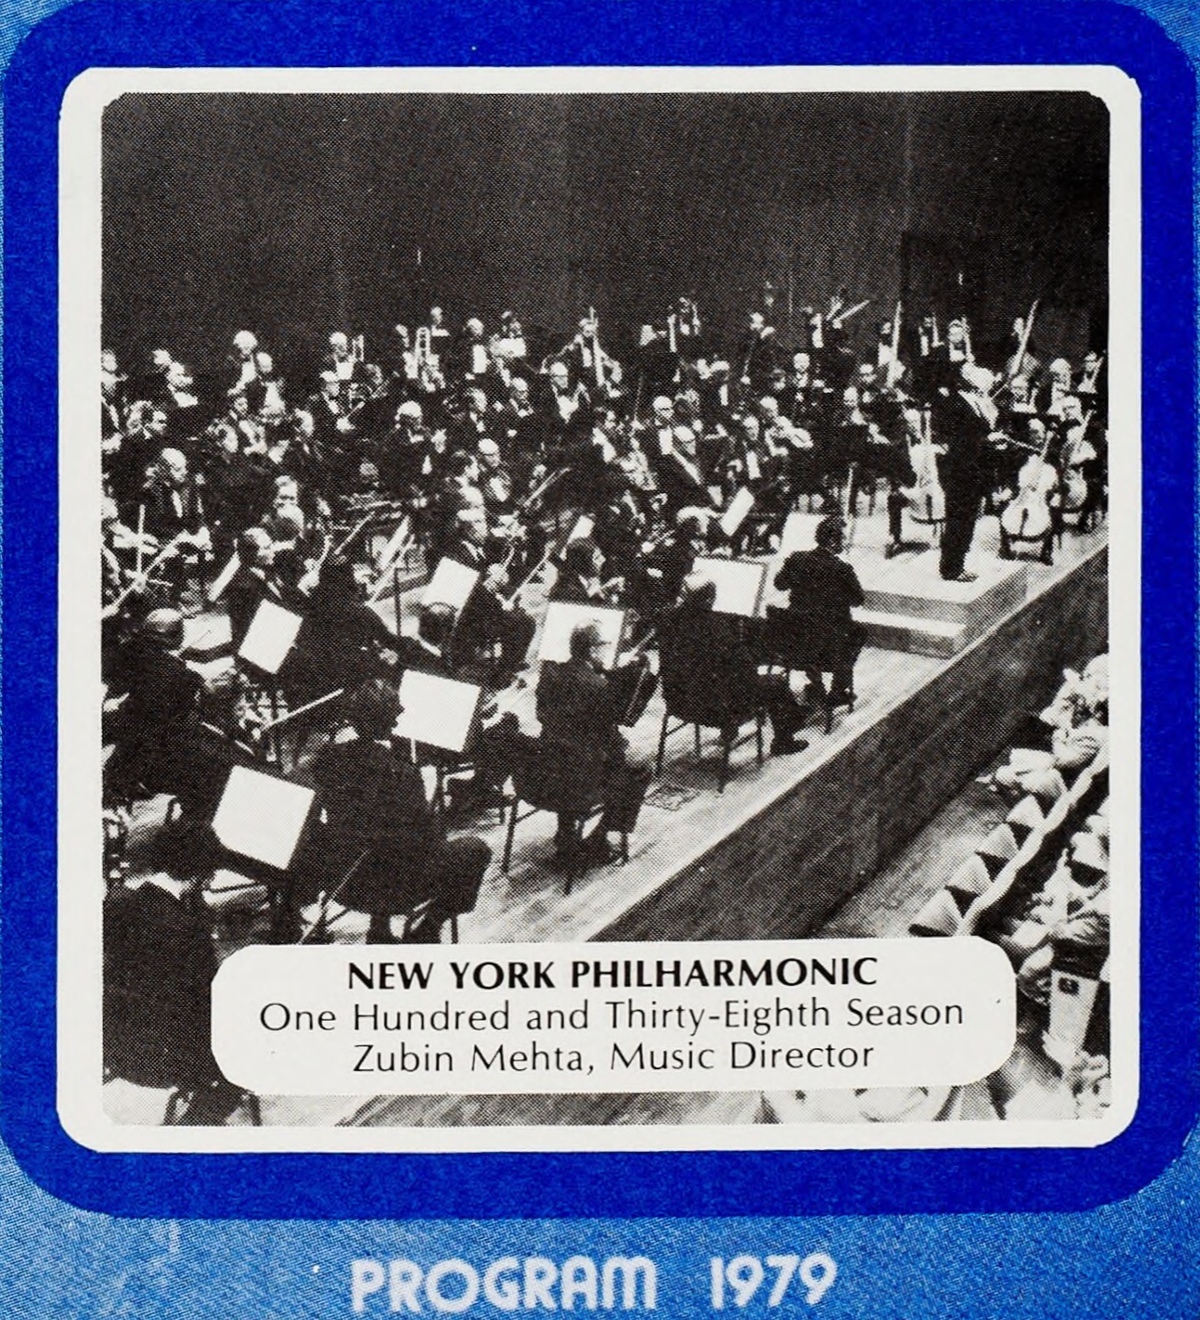 New York Philharmonic, 1979